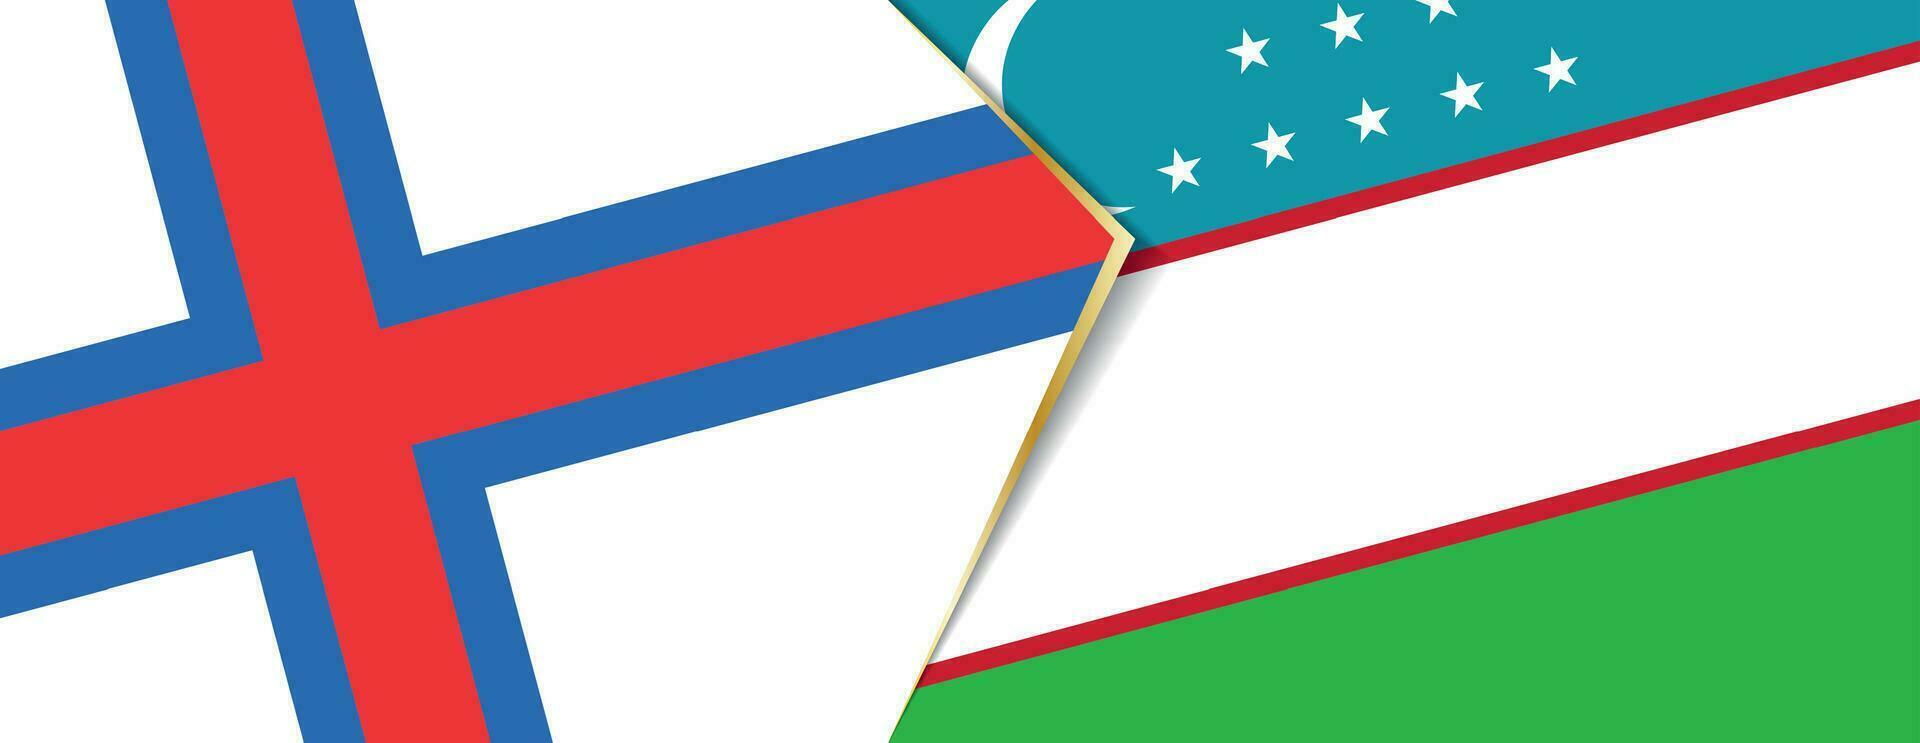 faroe öar och uzbekistan flaggor, två vektor flaggor.